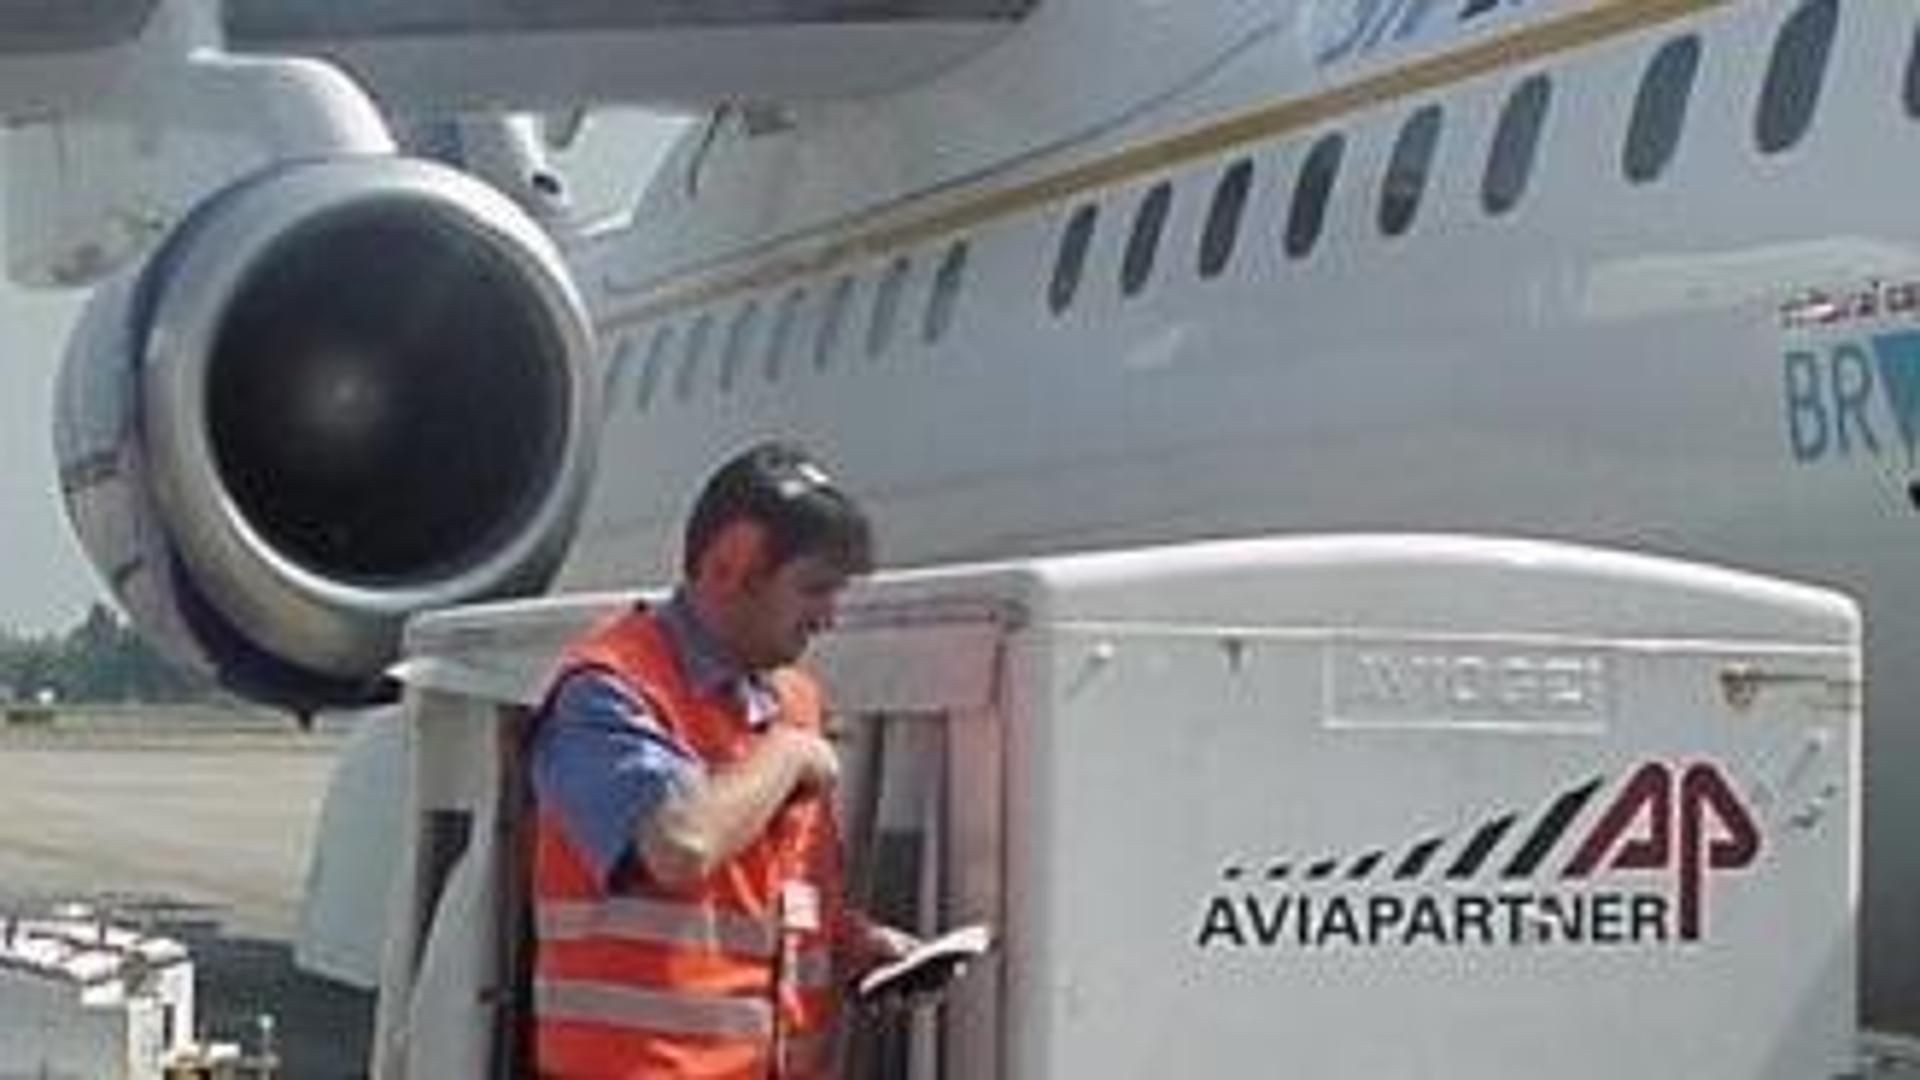 Accordo tra Aviapartner e National Cleanness: assunti 28 lavoratori a tempo indeterminato